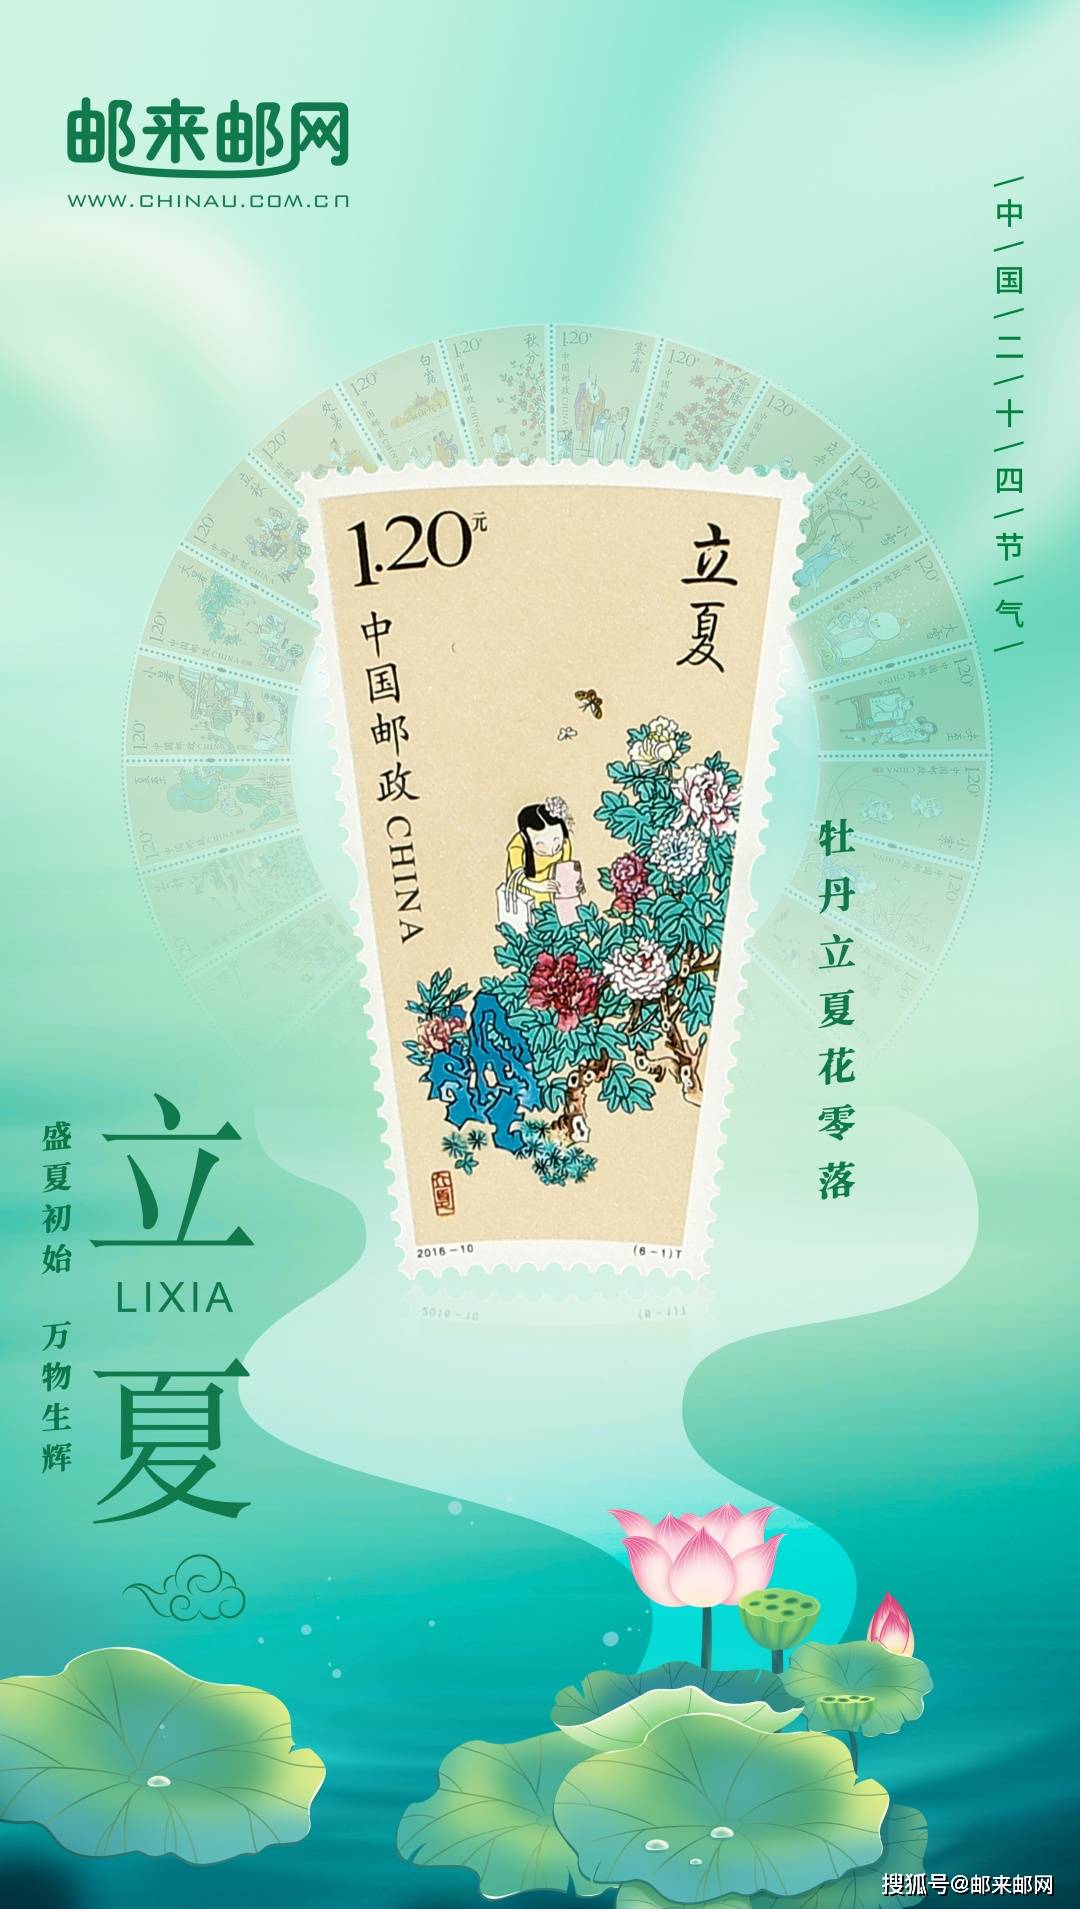 共赏国色天香的景象在《二十四节气》系列邮票中的立夏在春花告别之际